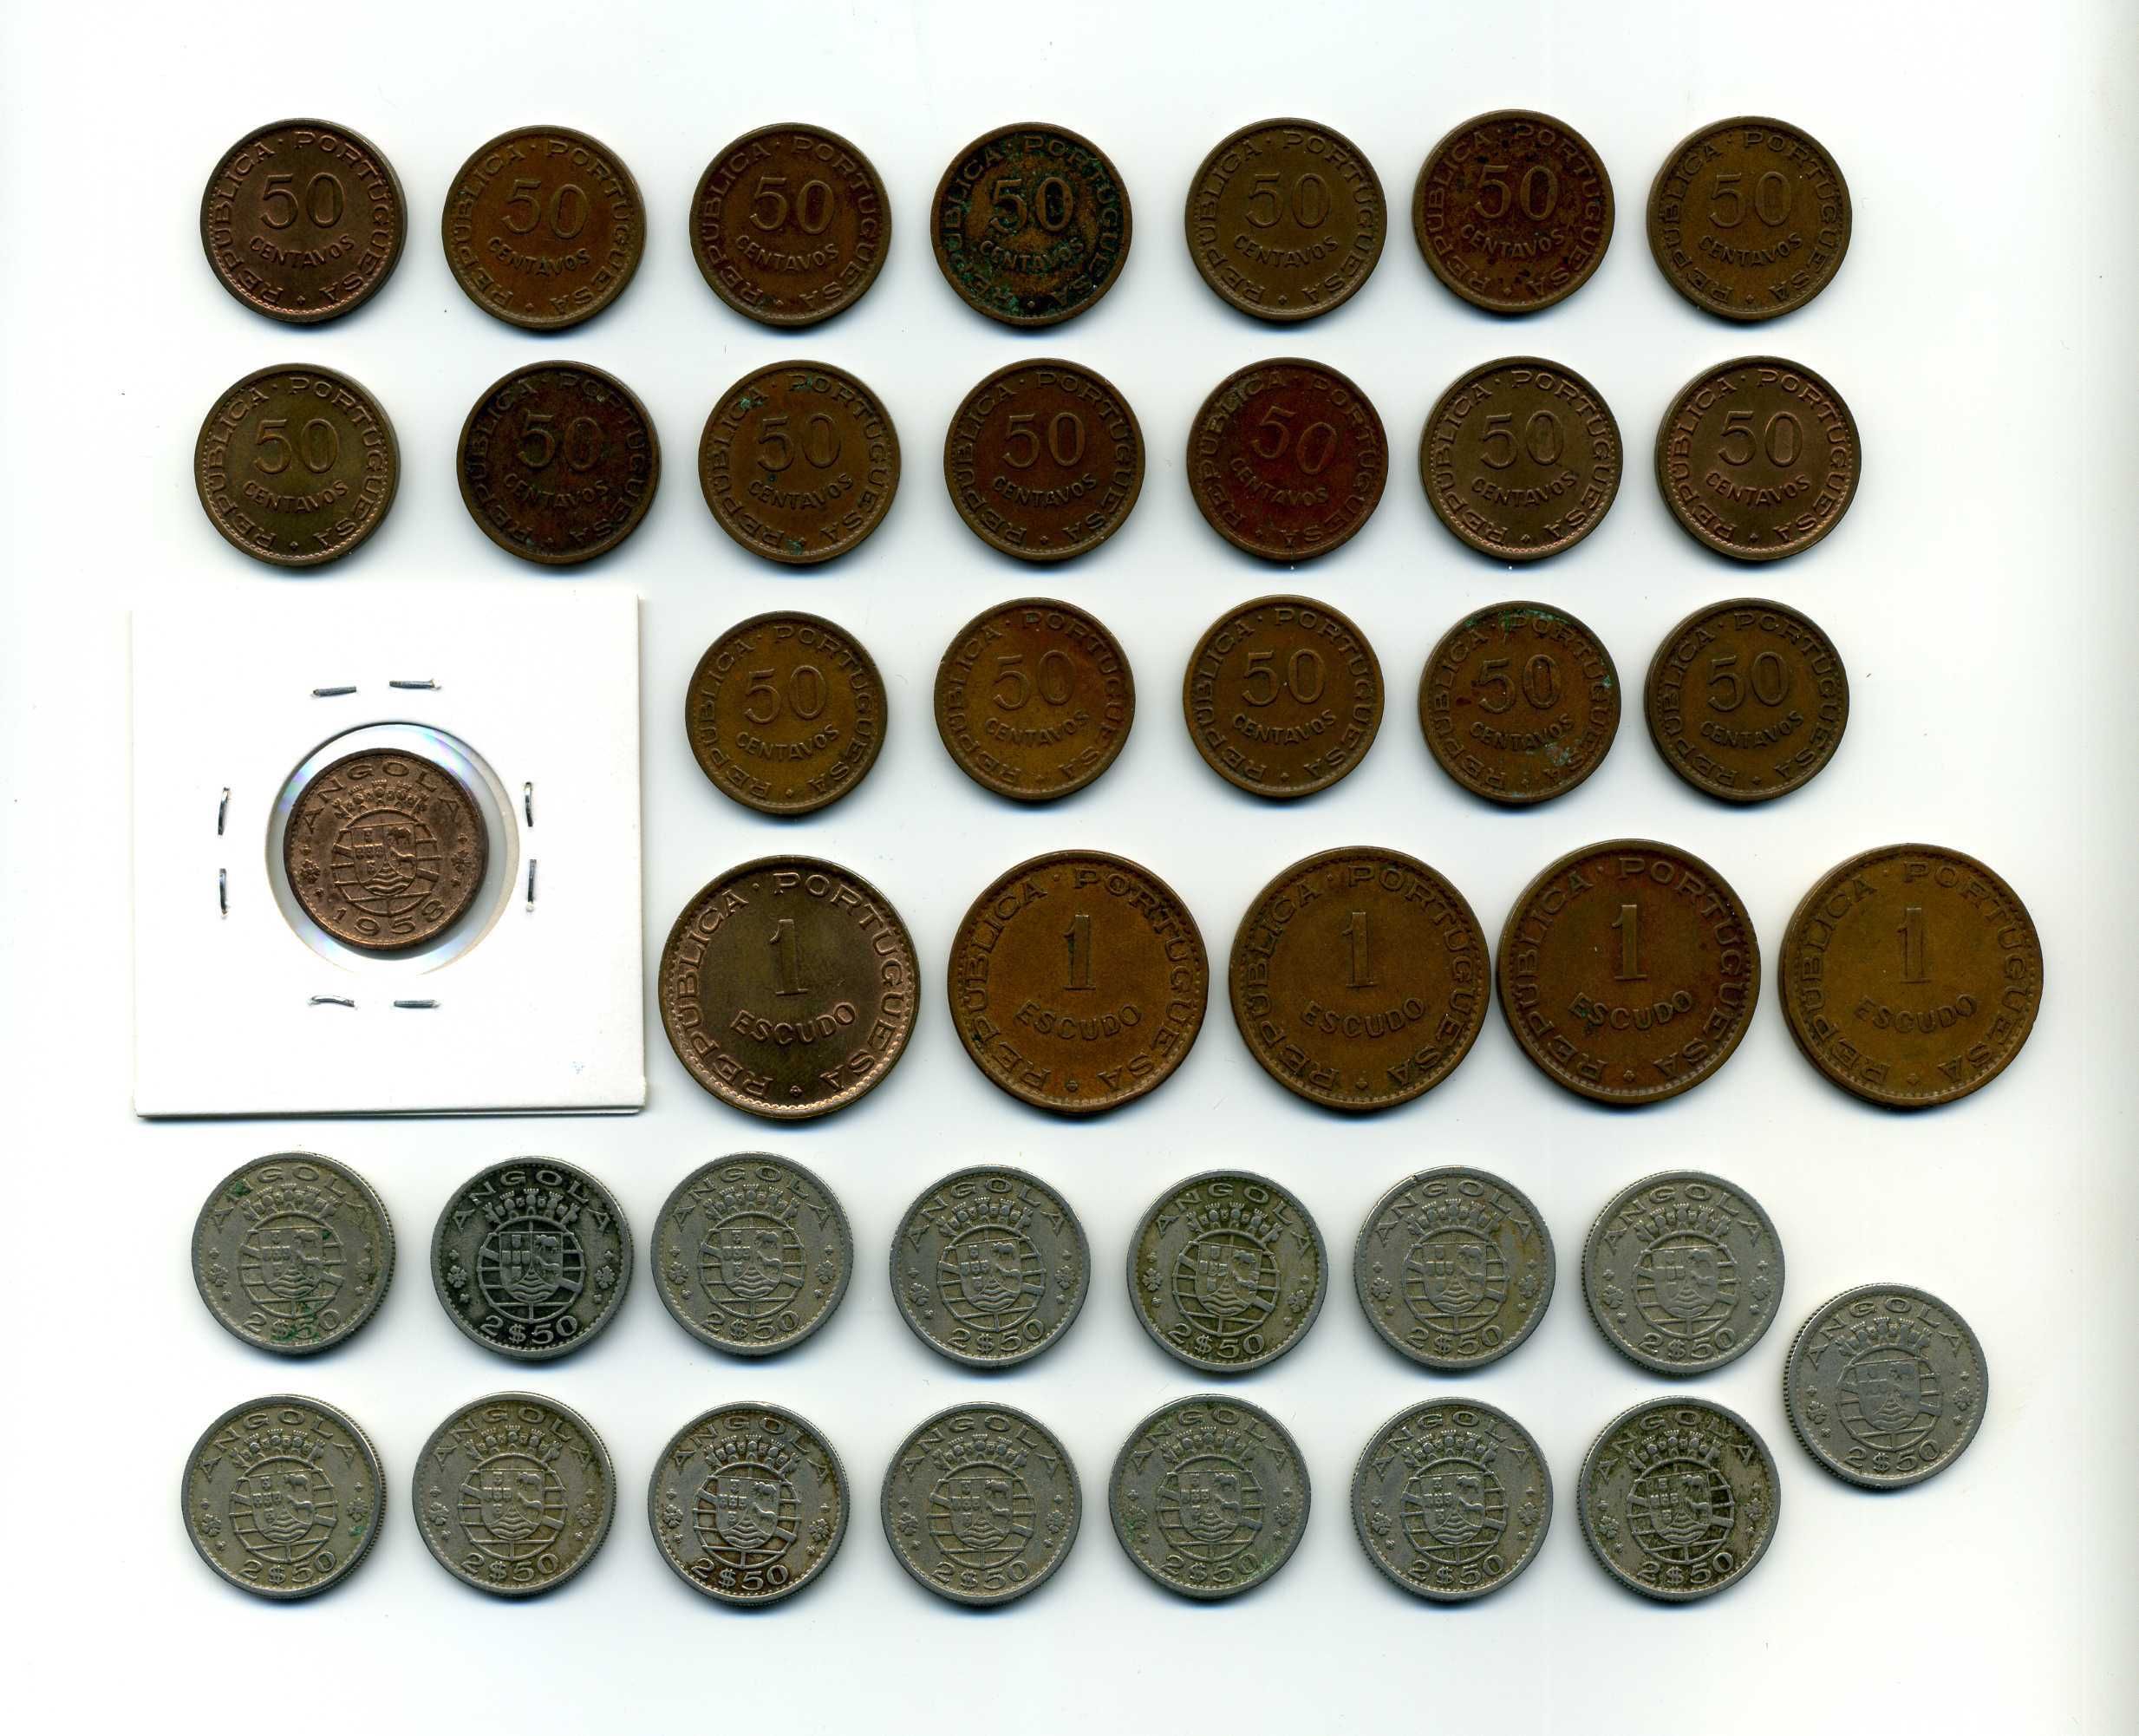 Lote de moedas de Angola - República Portuguesa